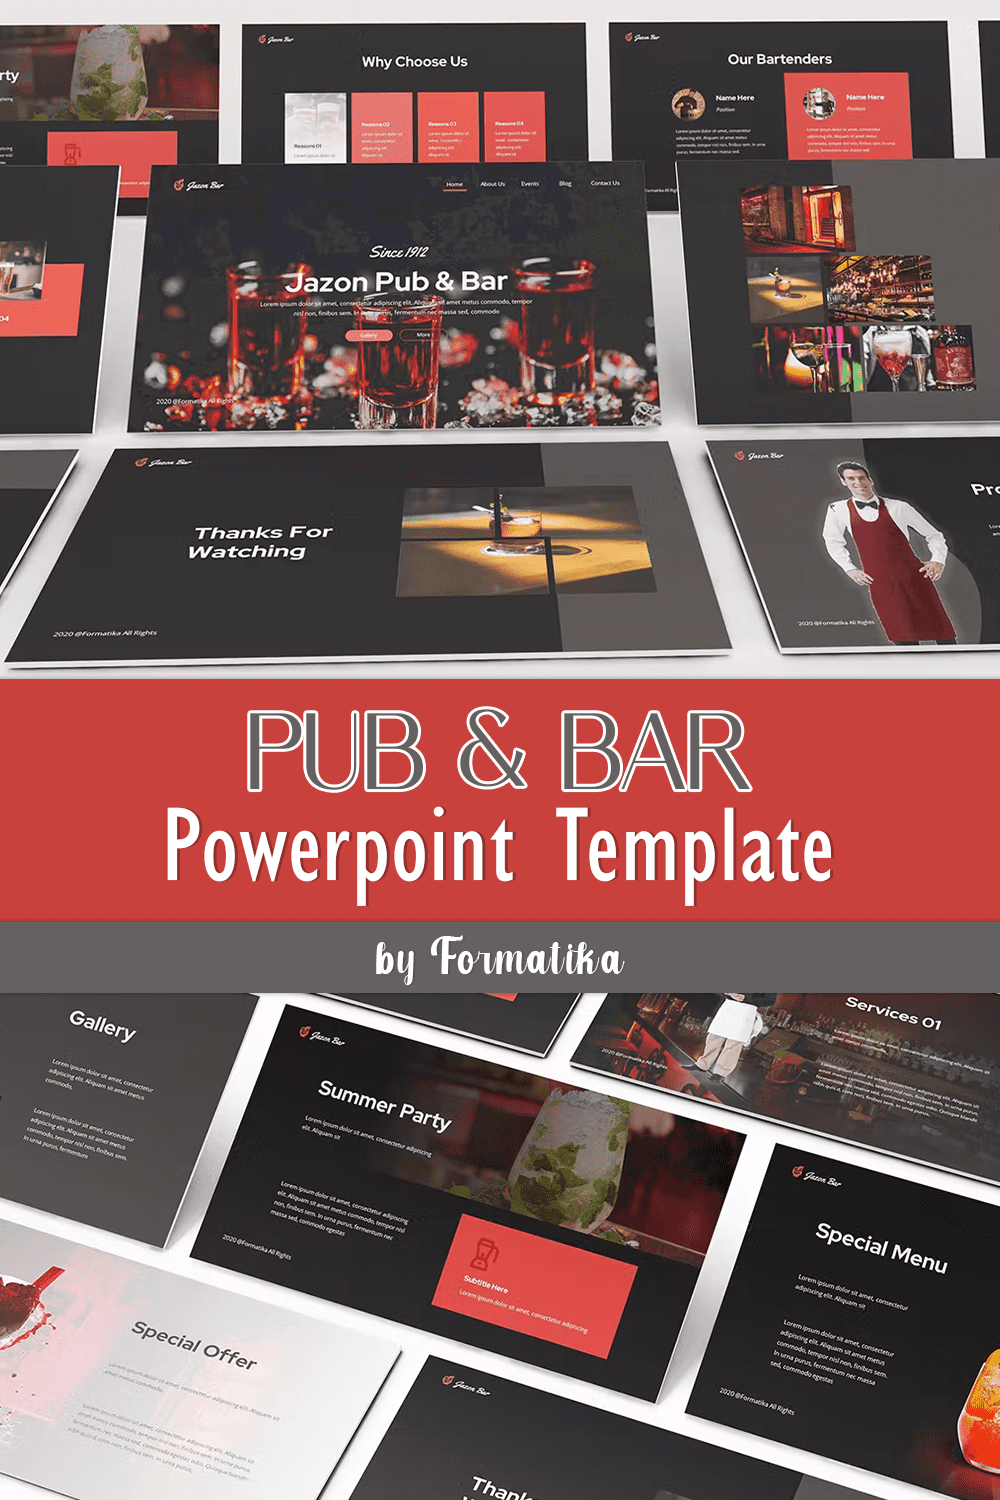 Pub & Bar PowerPoint Template - Pinterest.